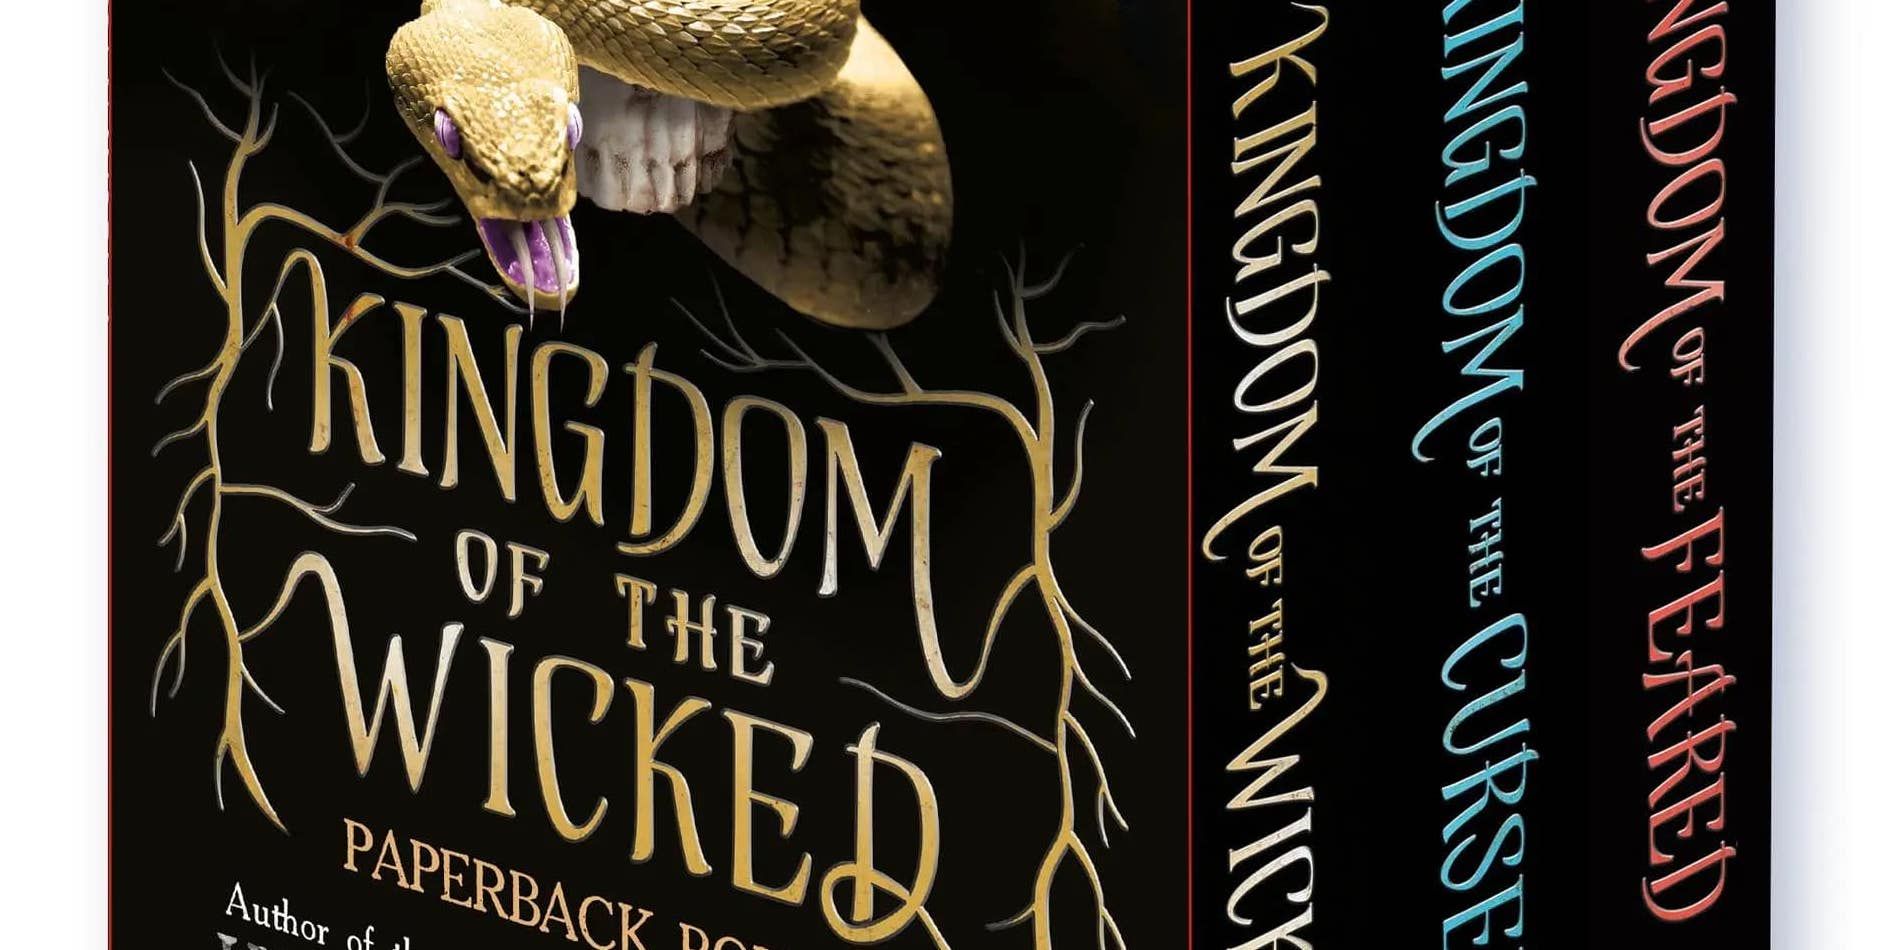 Capa do livro Kingdom of the Wicked em um box set da série.